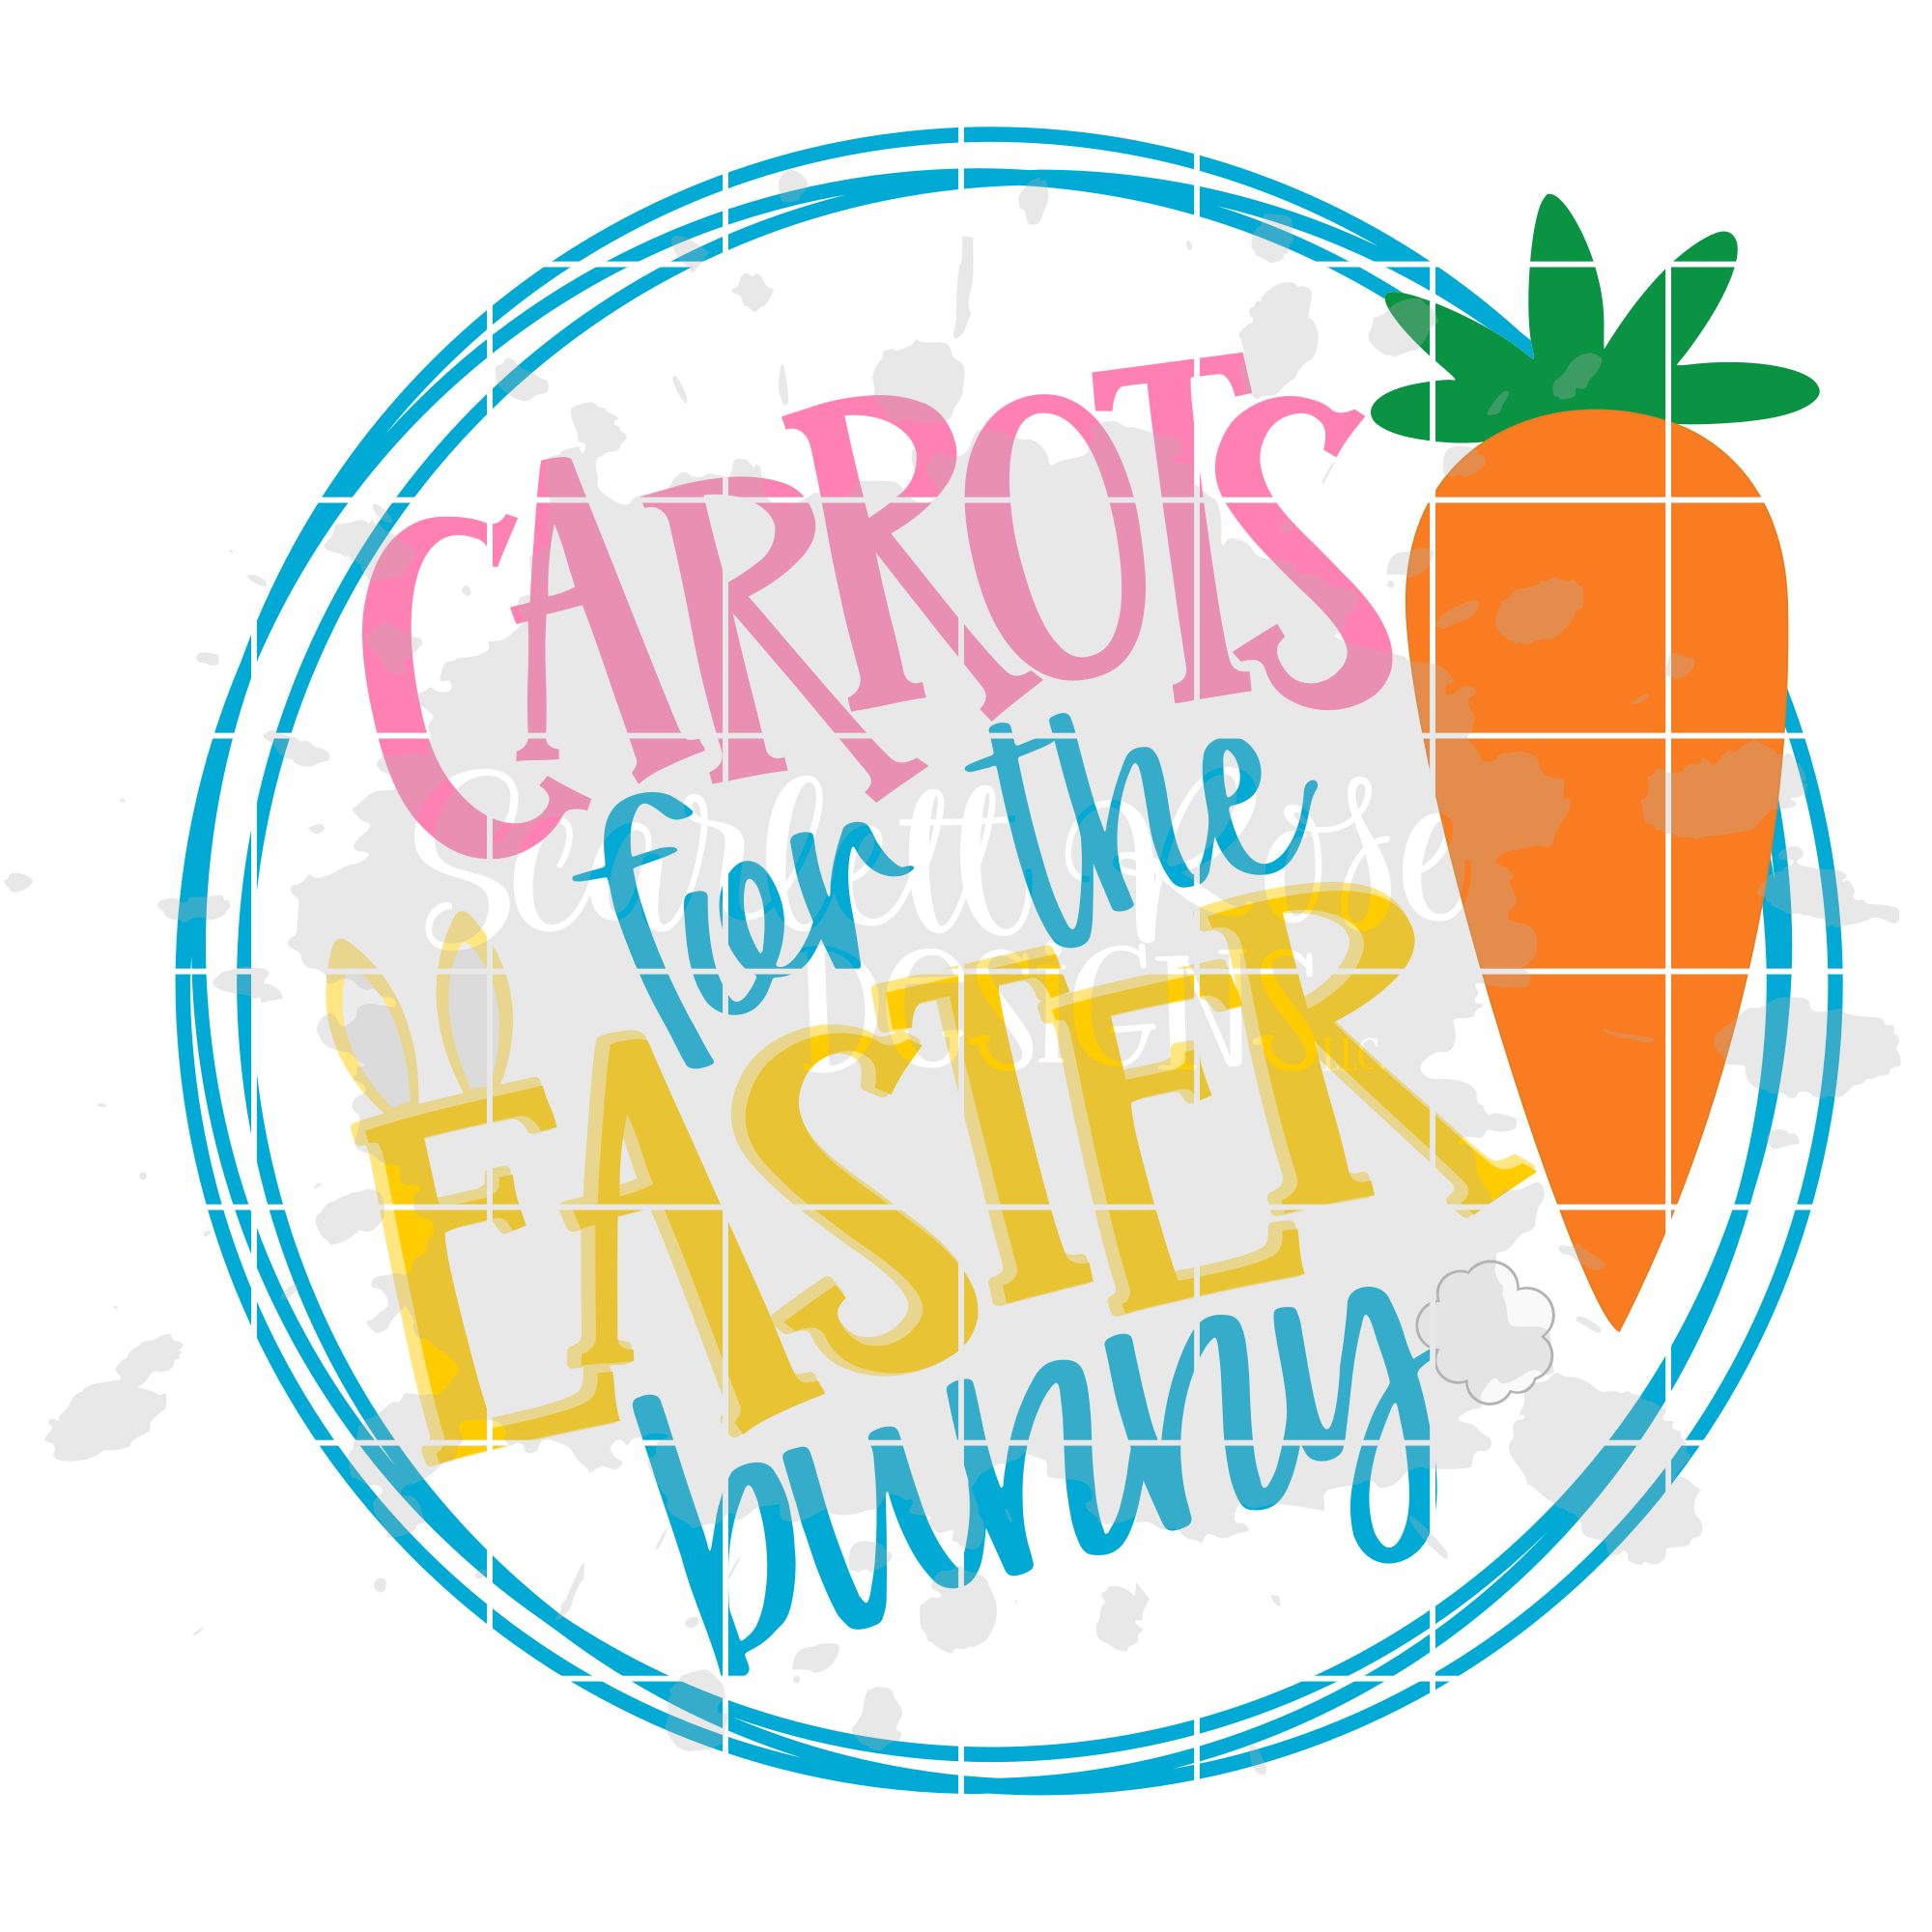 Download Easter SVG, Carrots for the Easter Bunny SVG - Scarlett Rose Designs